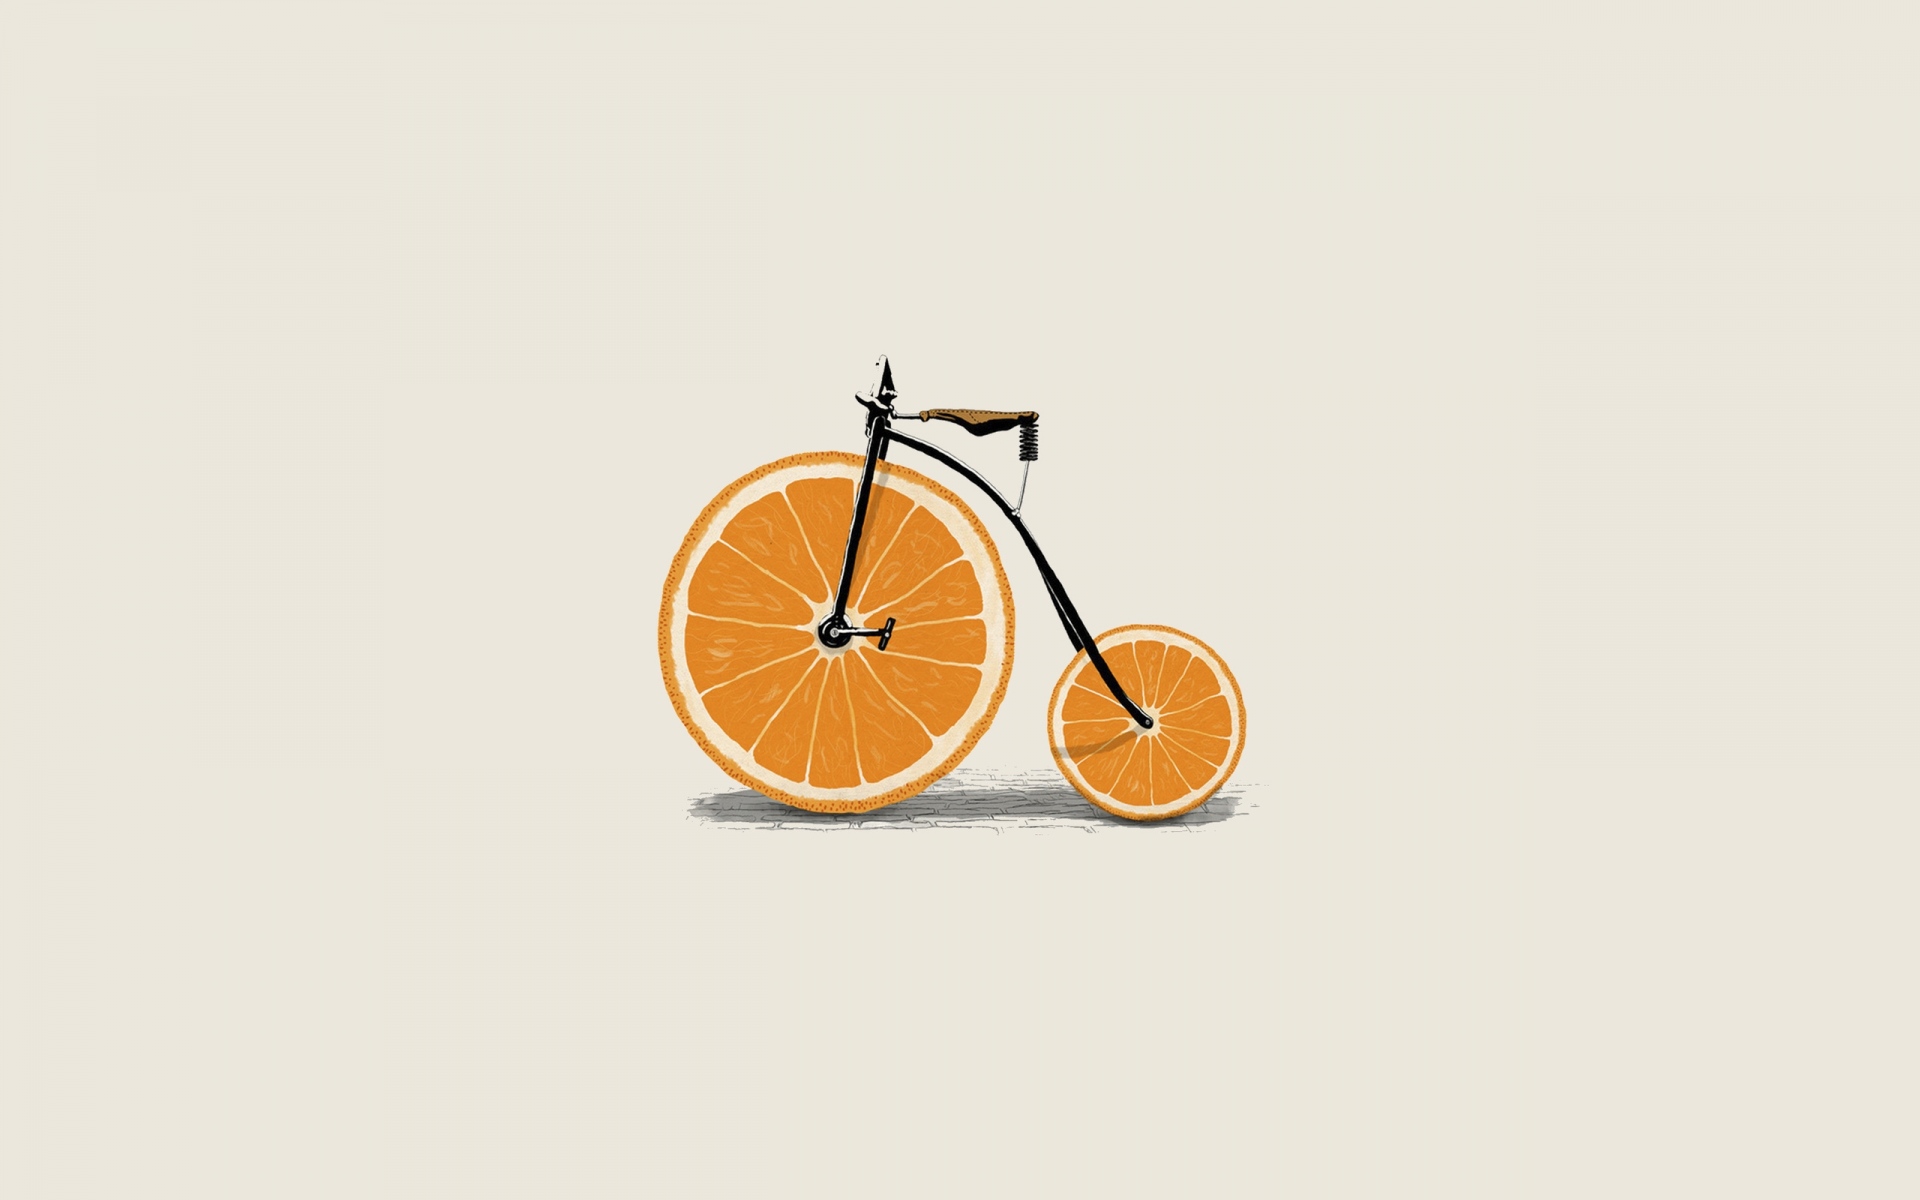 Картинки оранжевая, клинья, колесо, велосипед, минимализм, велосипед фото и обои на рабочий стол